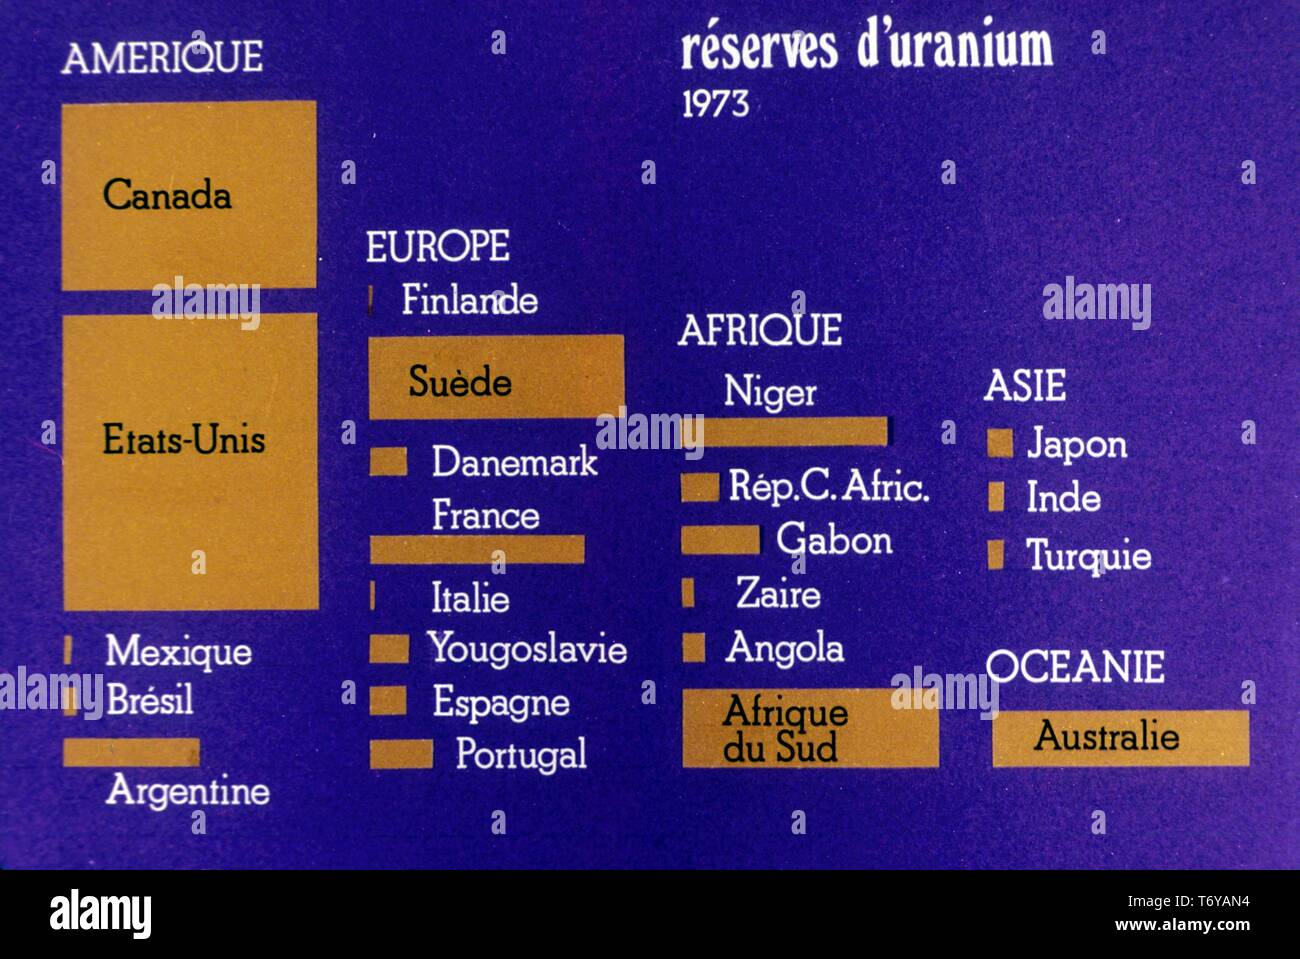 Diagramm, in französischer Sprache beschriftet, grafisch Darstellung internationale Uranreserven nach Land, 1973. Mit freundlicher Genehmigung des US-Ministeriums für Energie. () Stockfoto